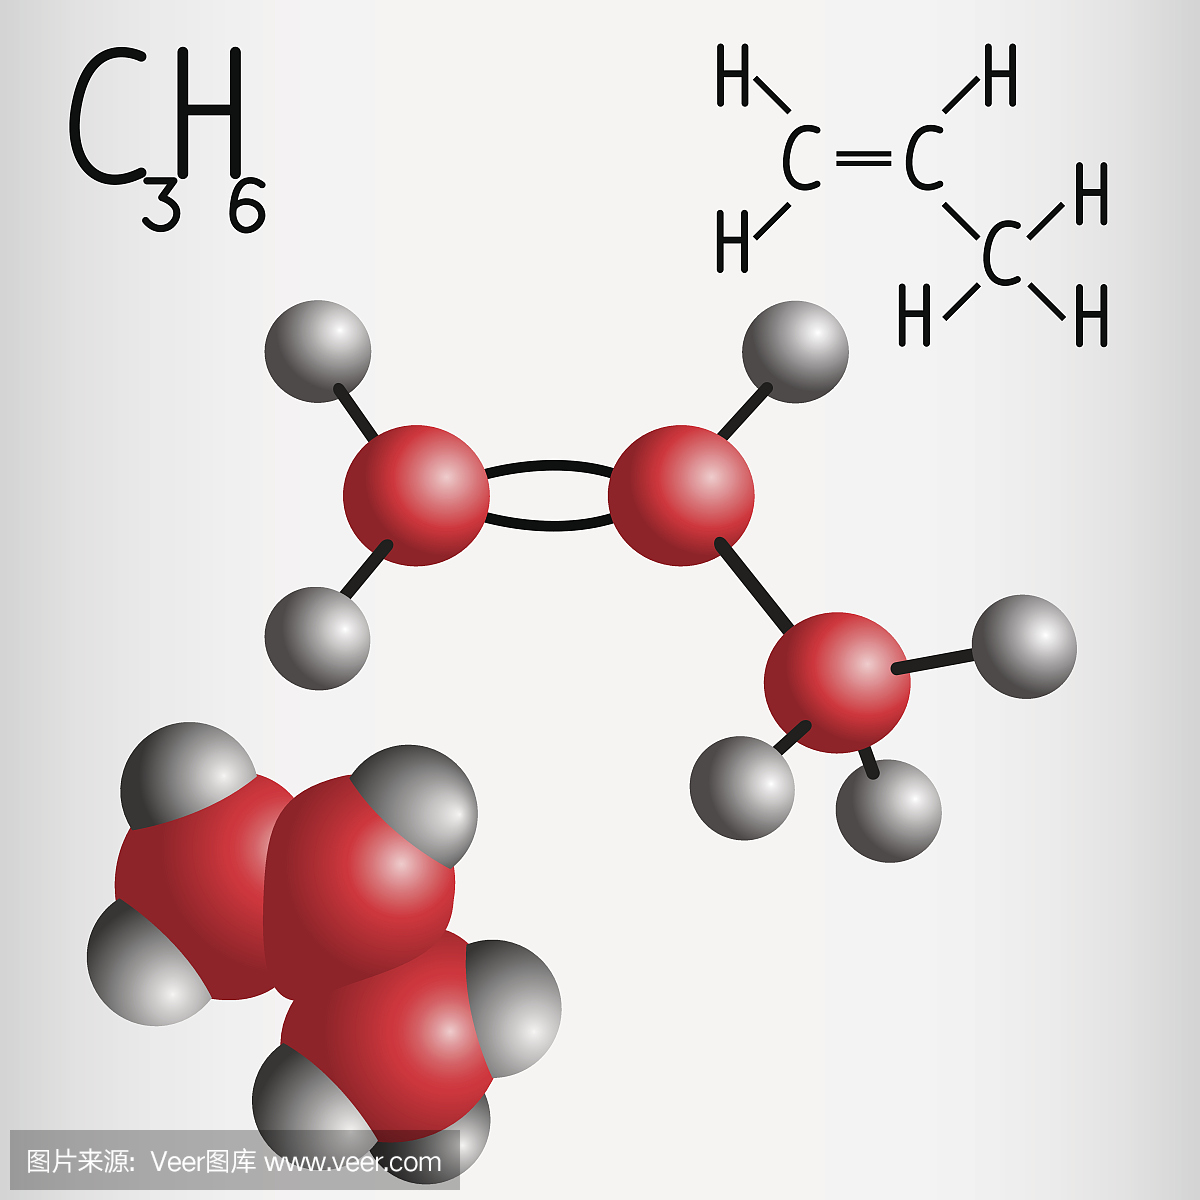 丙烯C3H6的化学式和化学式和分子模型